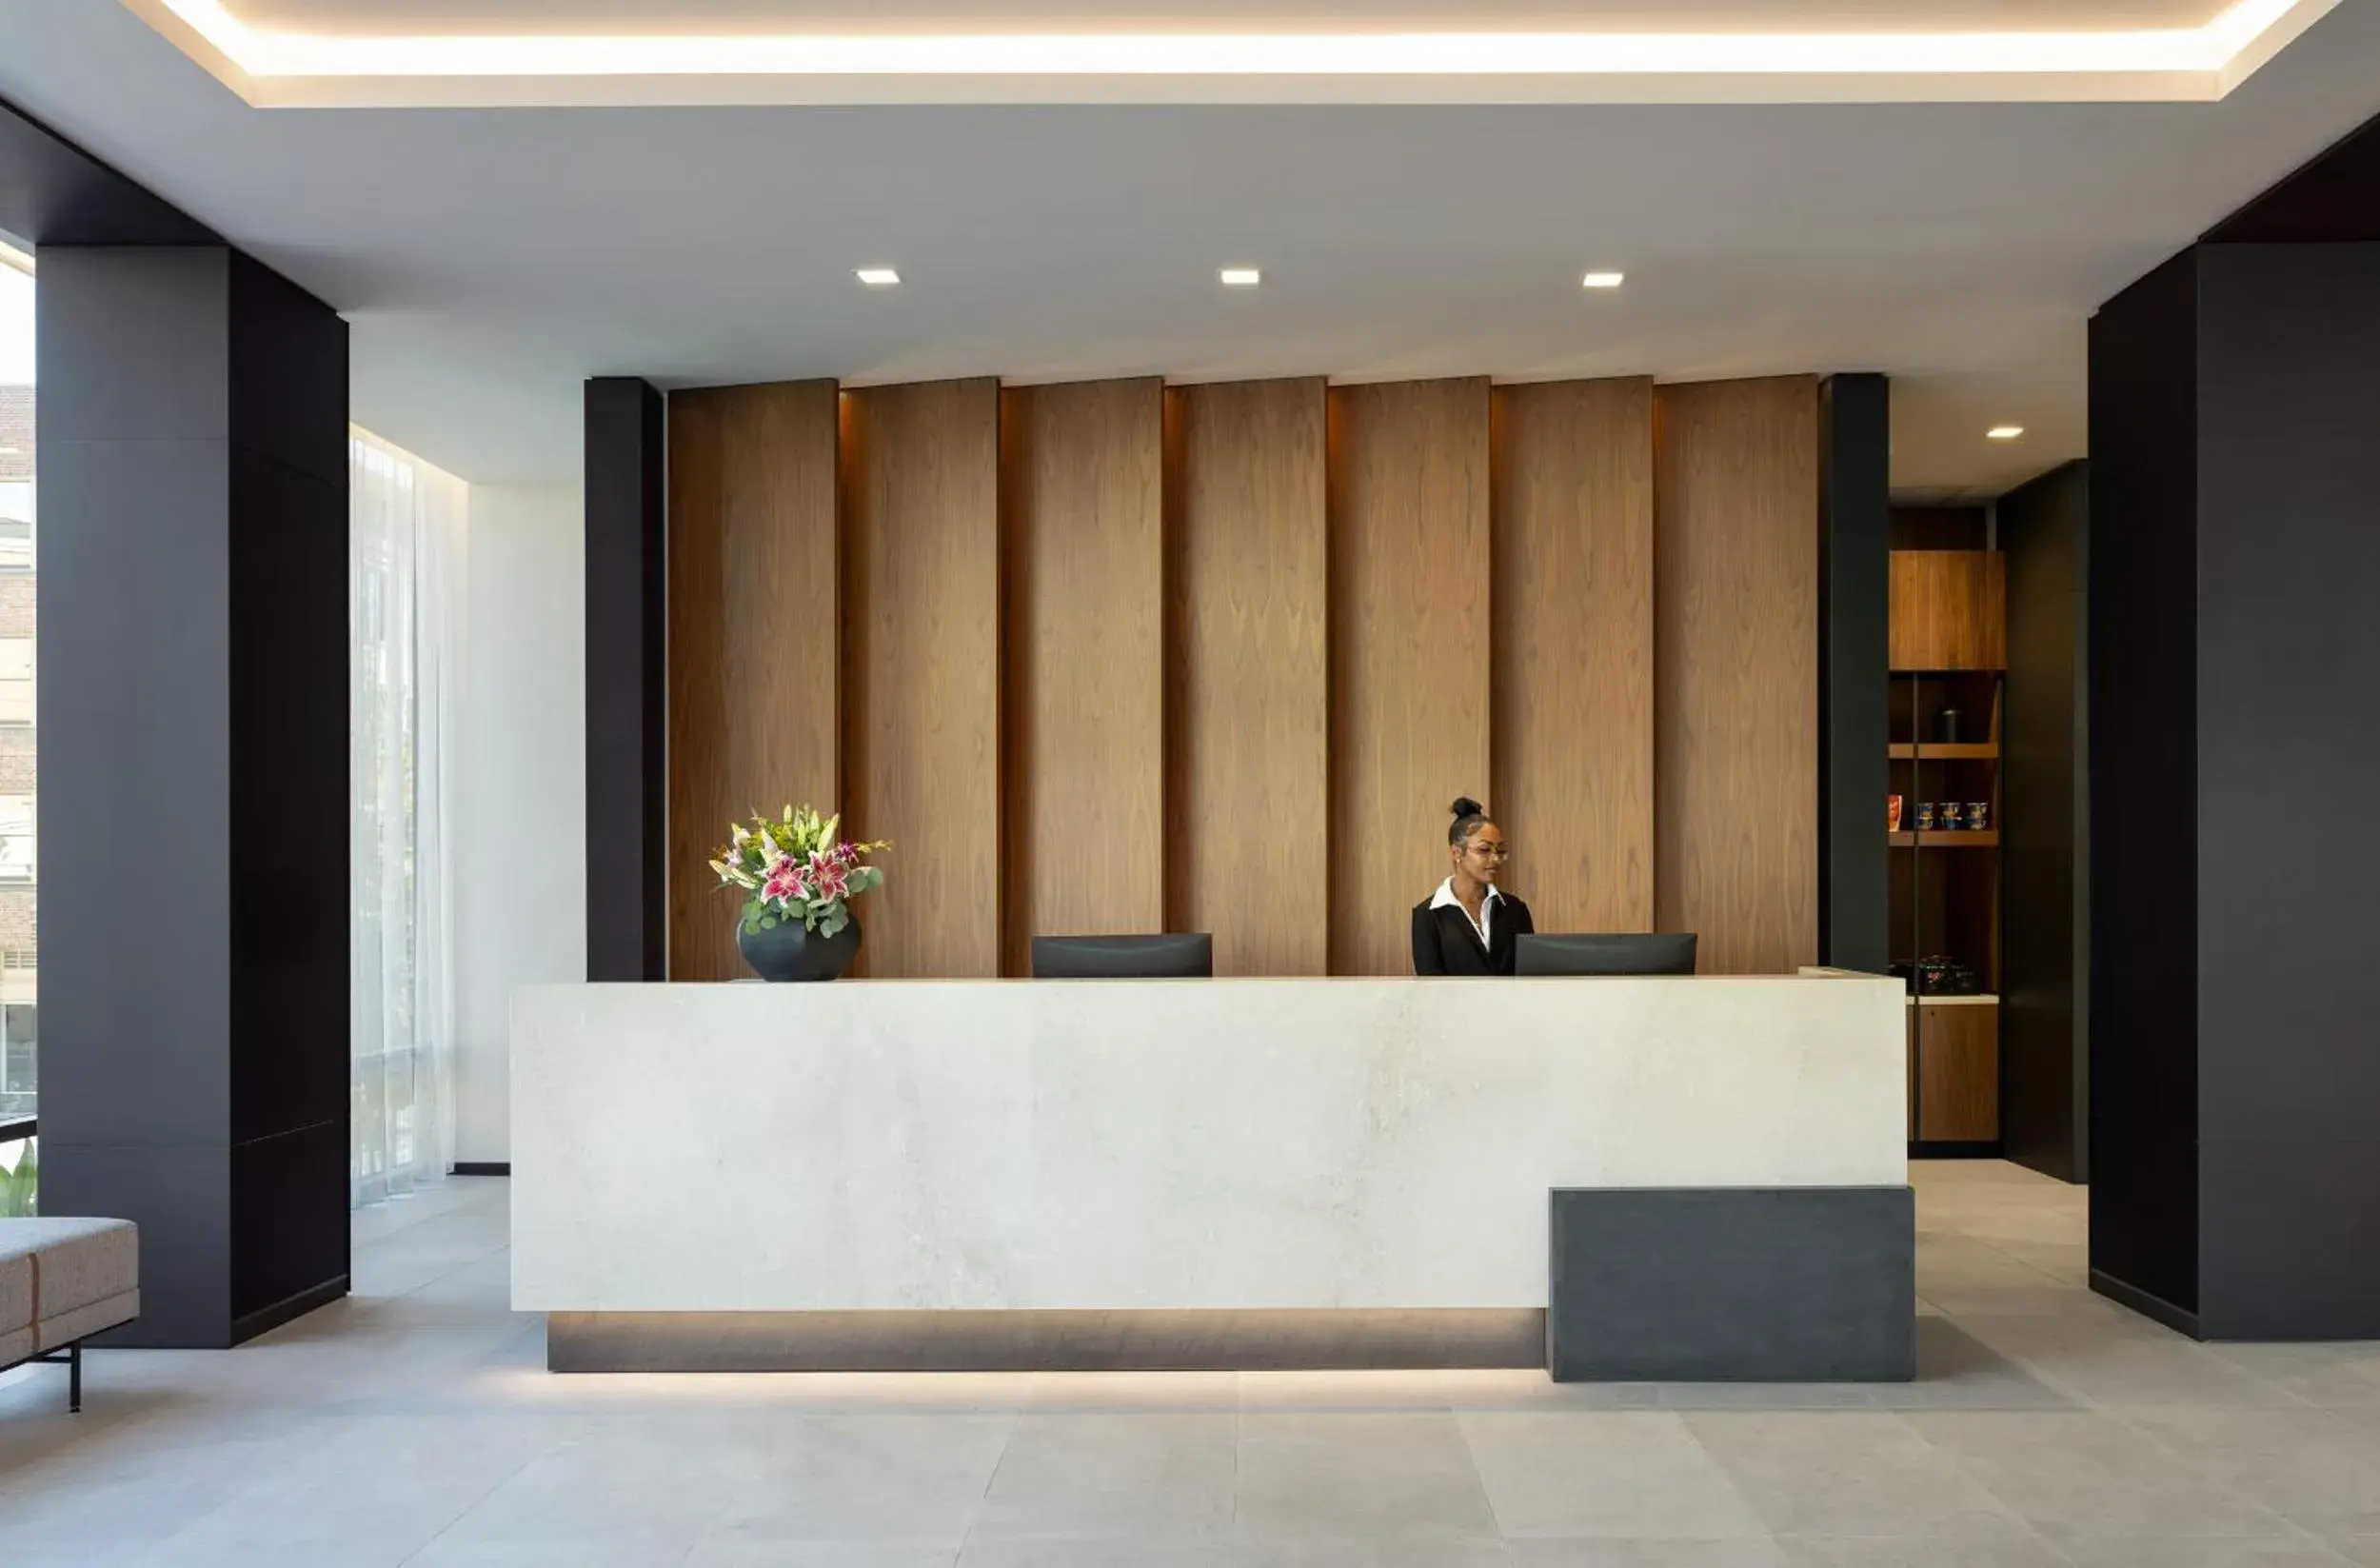 Lobby or reception, Lobby/Reception in AC Hotel by Marriott San Rafael